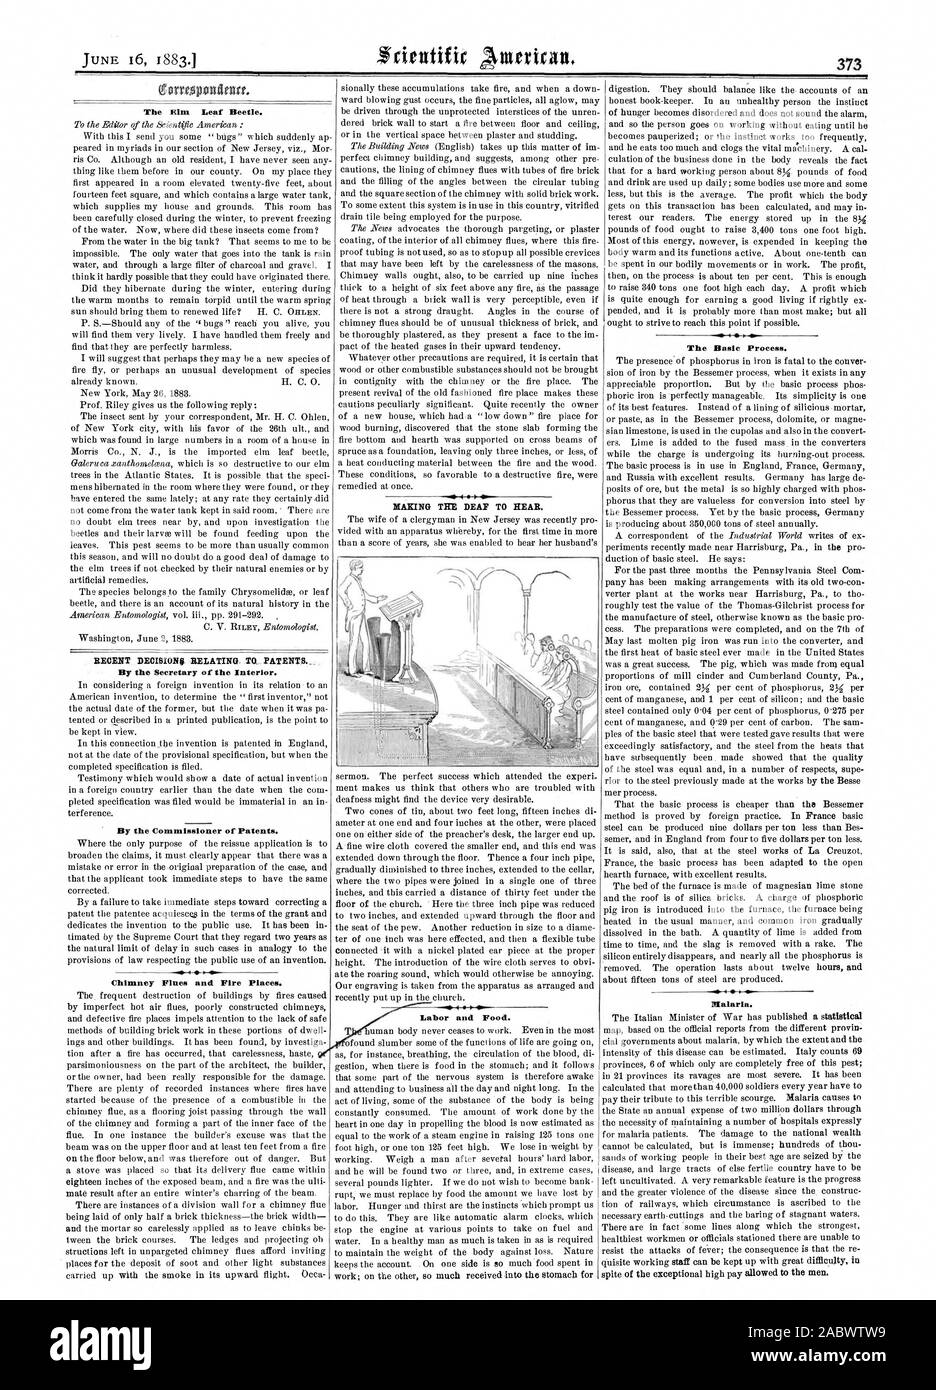 Garcon:4mm l'Orme du coléoptère. Par le secrétaire de l'intérieur. Par le commissaire des brevets. Les conduits de fumée et cheminées. Travail et de la nourriture. Le processus de base.Le paludisme., Scientific American, 1883-06-16 Banque D'Images